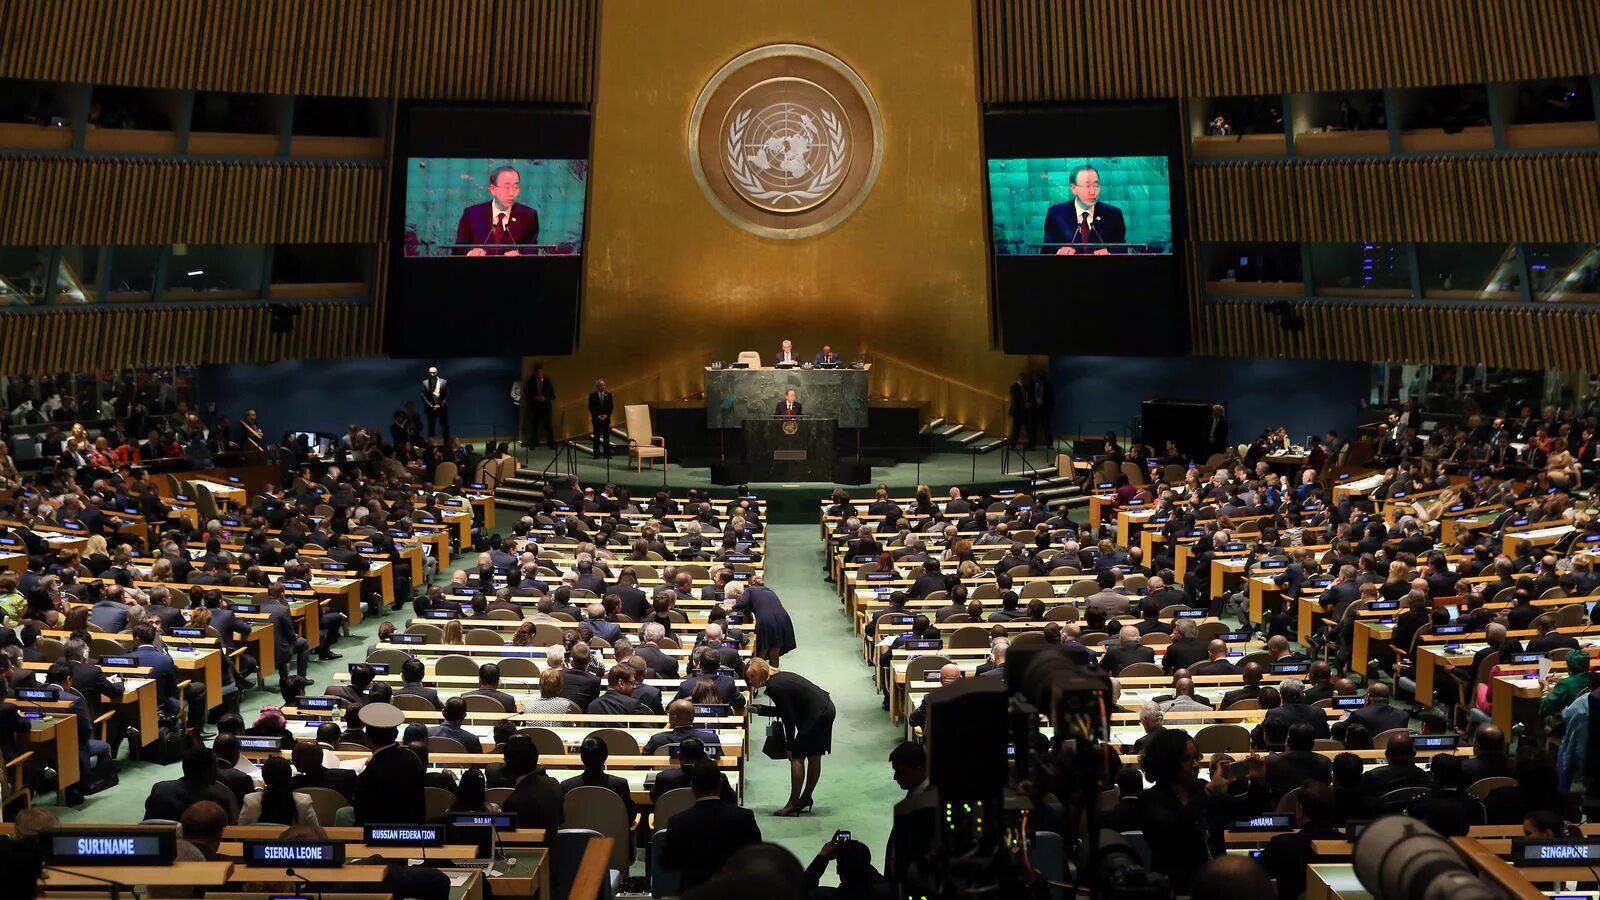 Урок оон. Генеральная Ассамблея ООН 2005. Трибуна Генассамблеи ООН. Зал заседания Генассамблеи ООН трибуна.